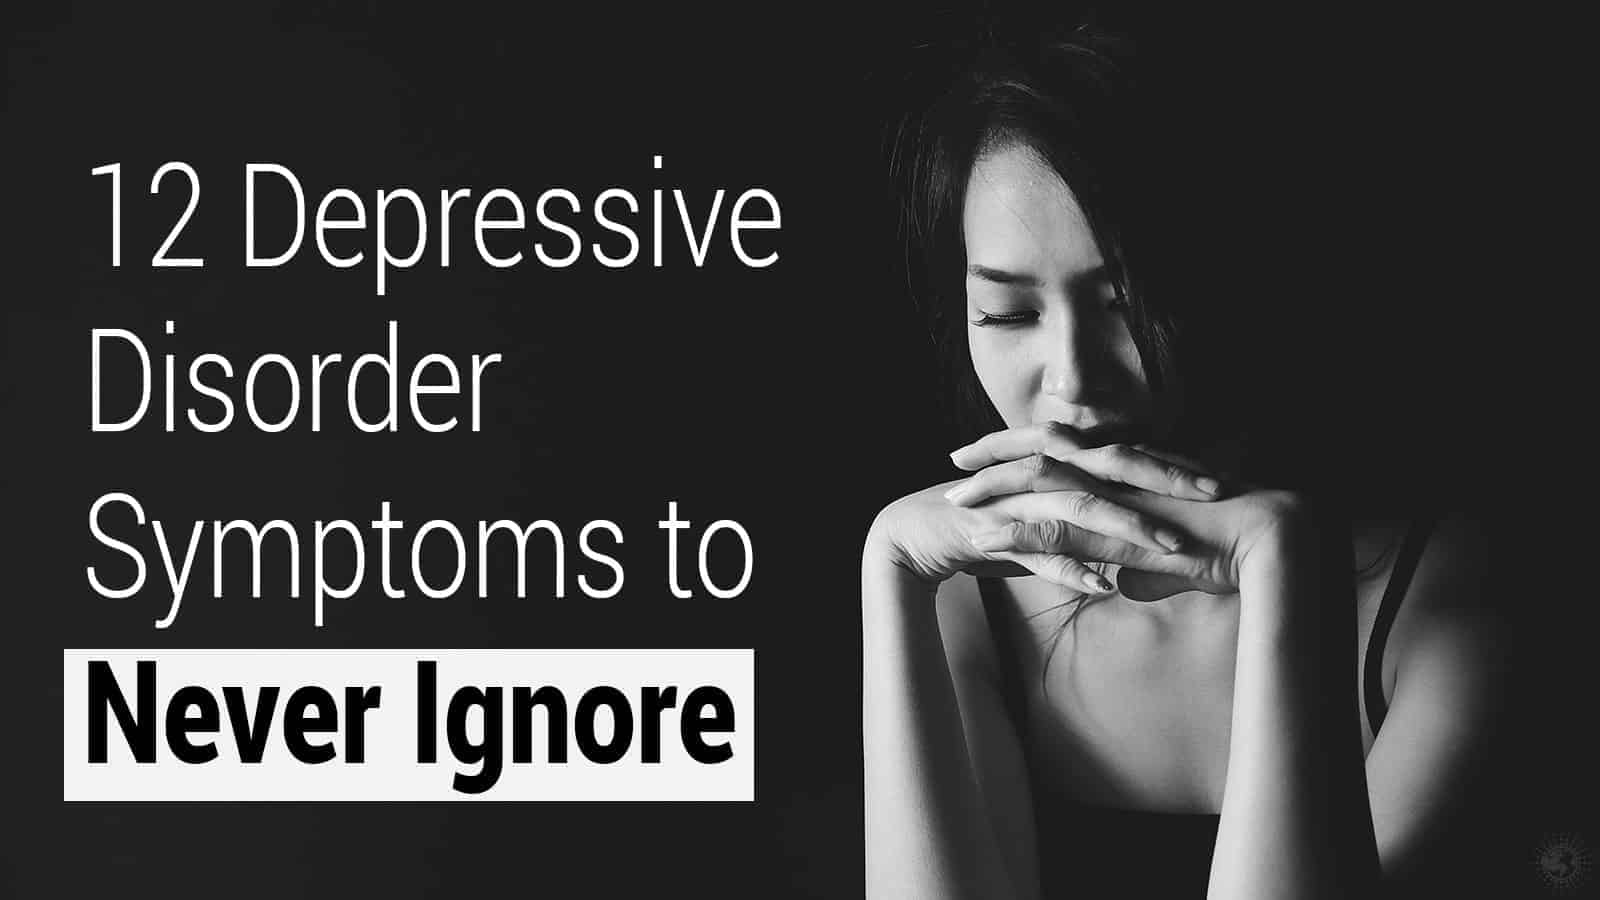 12 Depressive Disorder Symptoms to Never Ignore